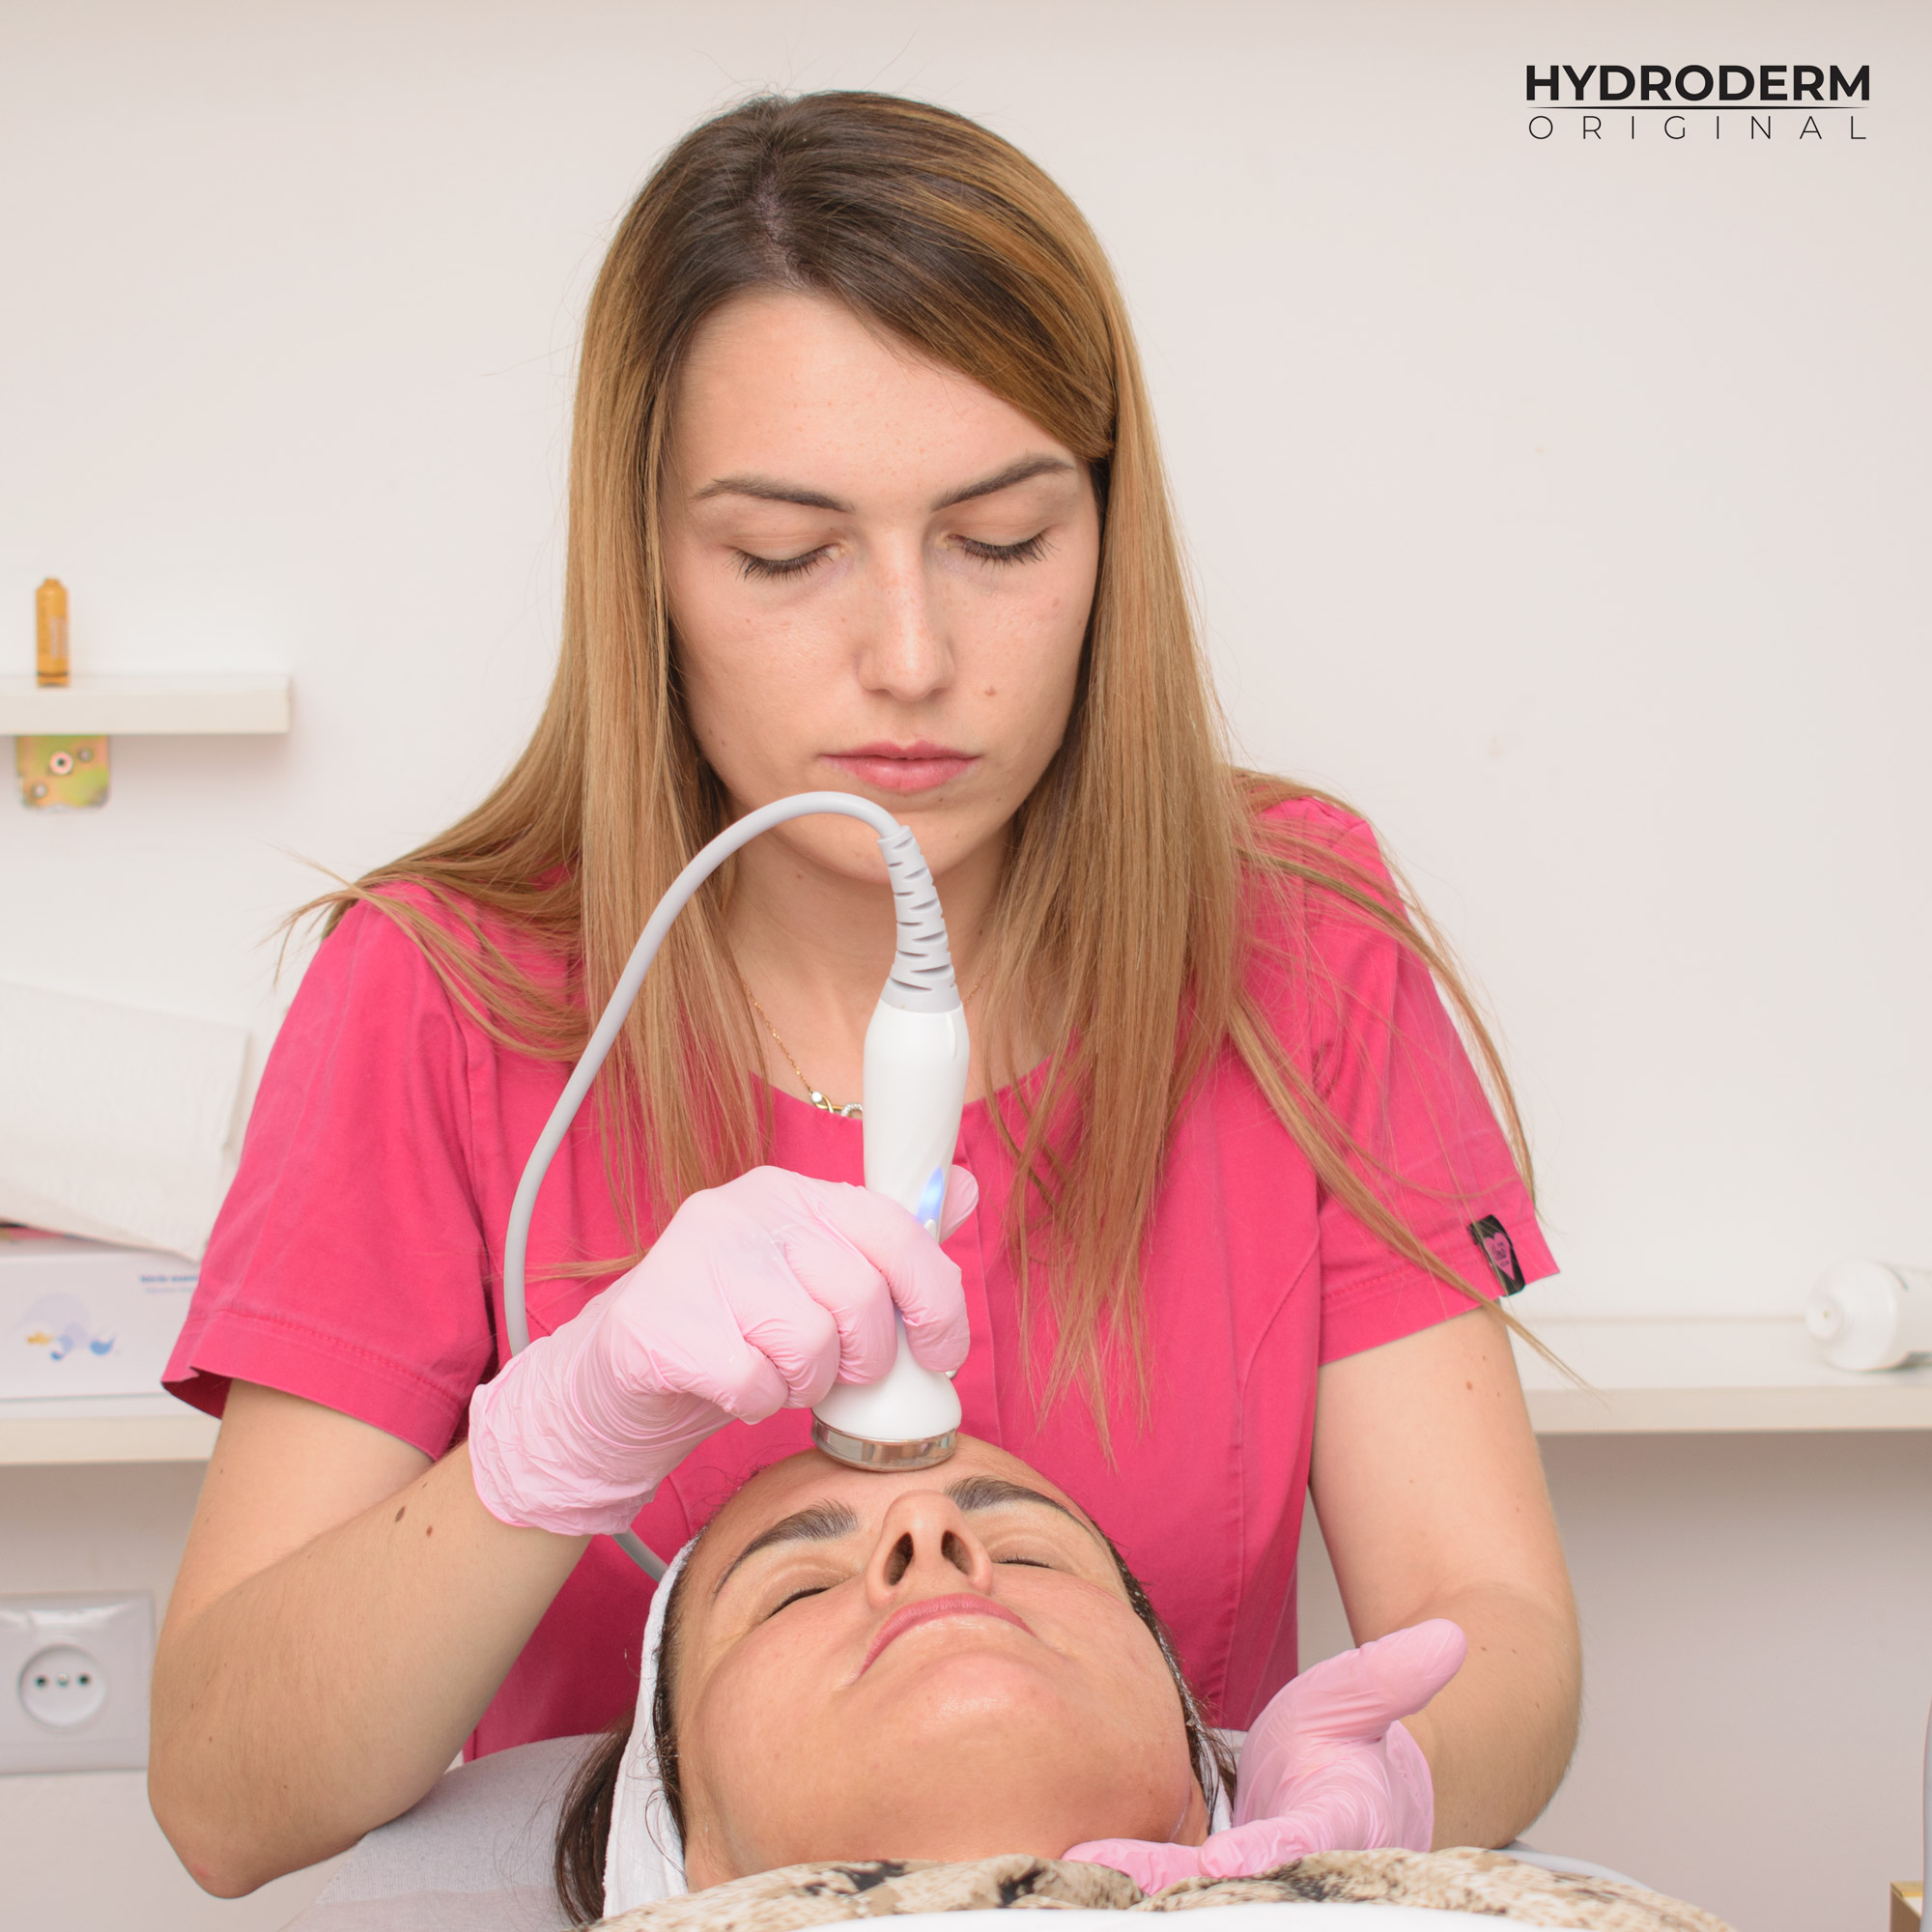 Mezoterapia bezigłowa przy wykorzystaniu ultradźwięków efektywnie wprowadza substancje aktywne zawarte w preparatach kosmetologicznych